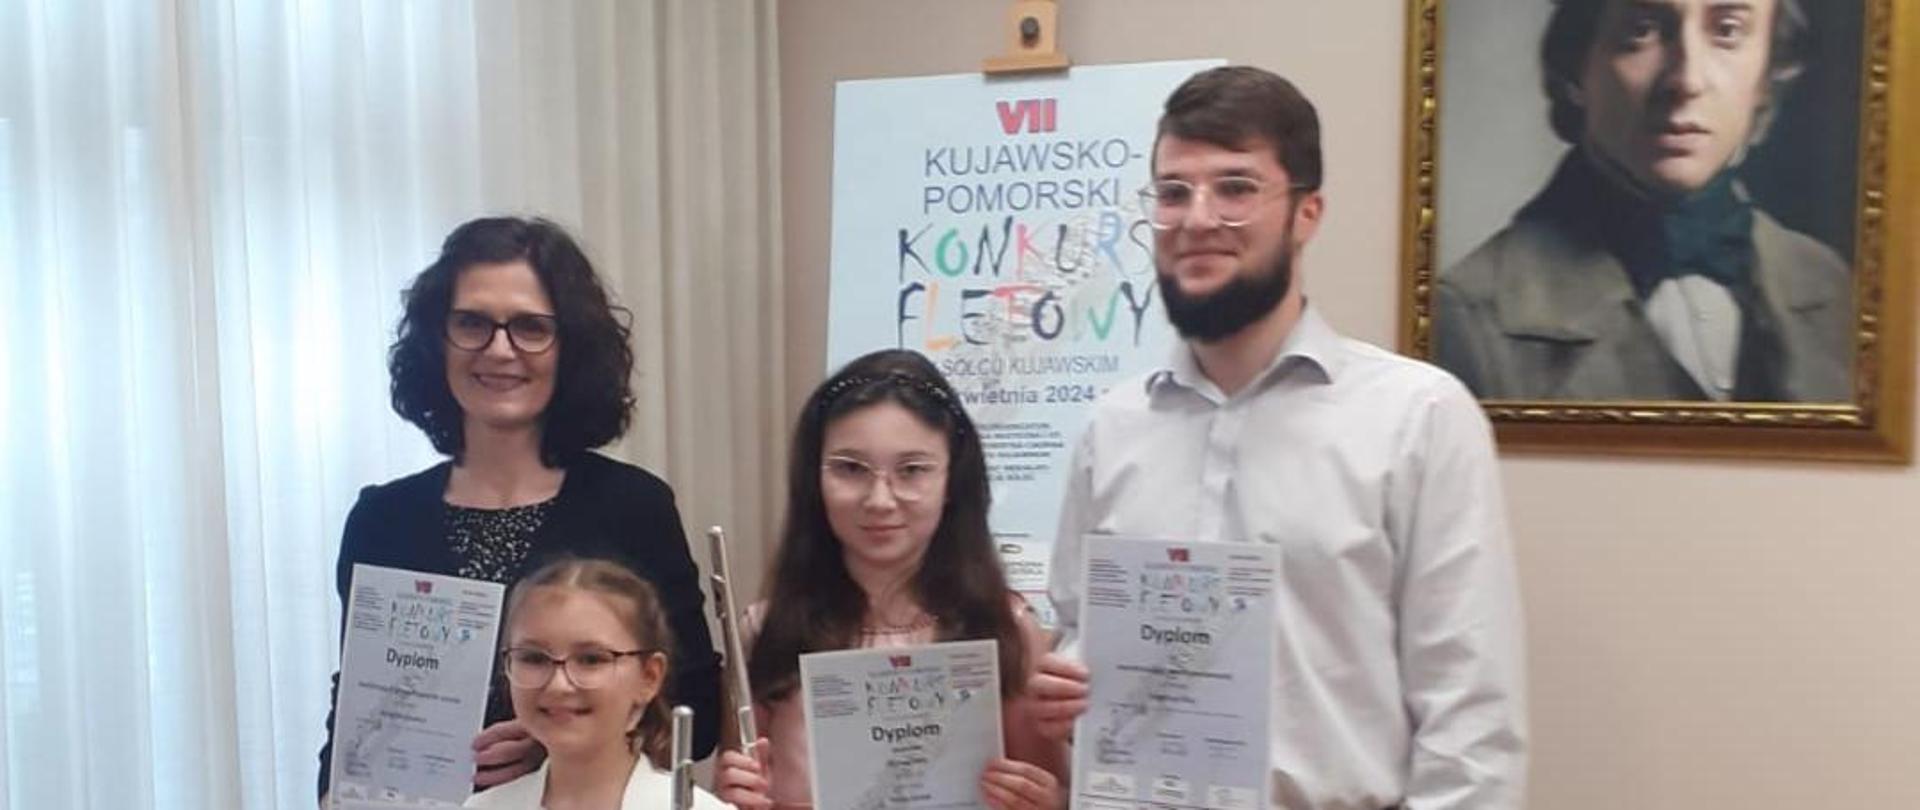 Od lewej Pani Anna Wojtowicz, Natalia Paliwoda, Maja Solak i pan Krystian Klej. Osoby trzymają dyplomy. W tle na sztaludze plakat konkursu. Na ścianie obraz kompozytora.